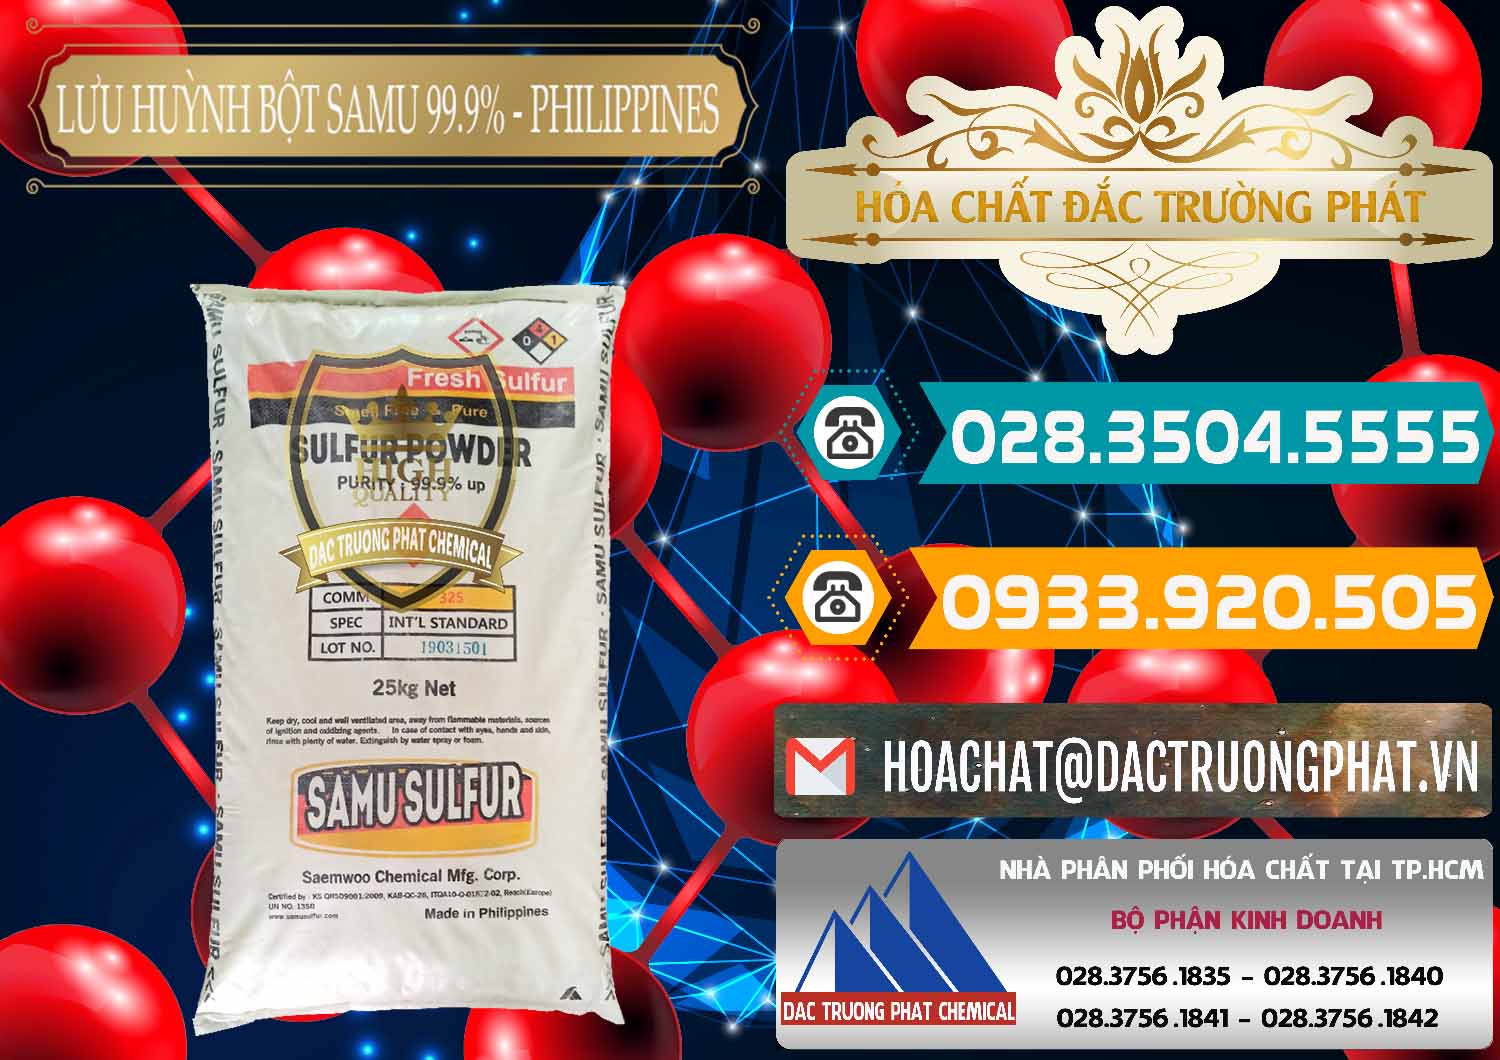 Nhà cung cấp & bán Lưu huỳnh Bột - Sulfur Powder Samu Philippines - 0201 - Công ty chuyên phân phối _ bán hóa chất tại TP.HCM - congtyhoachat.vn